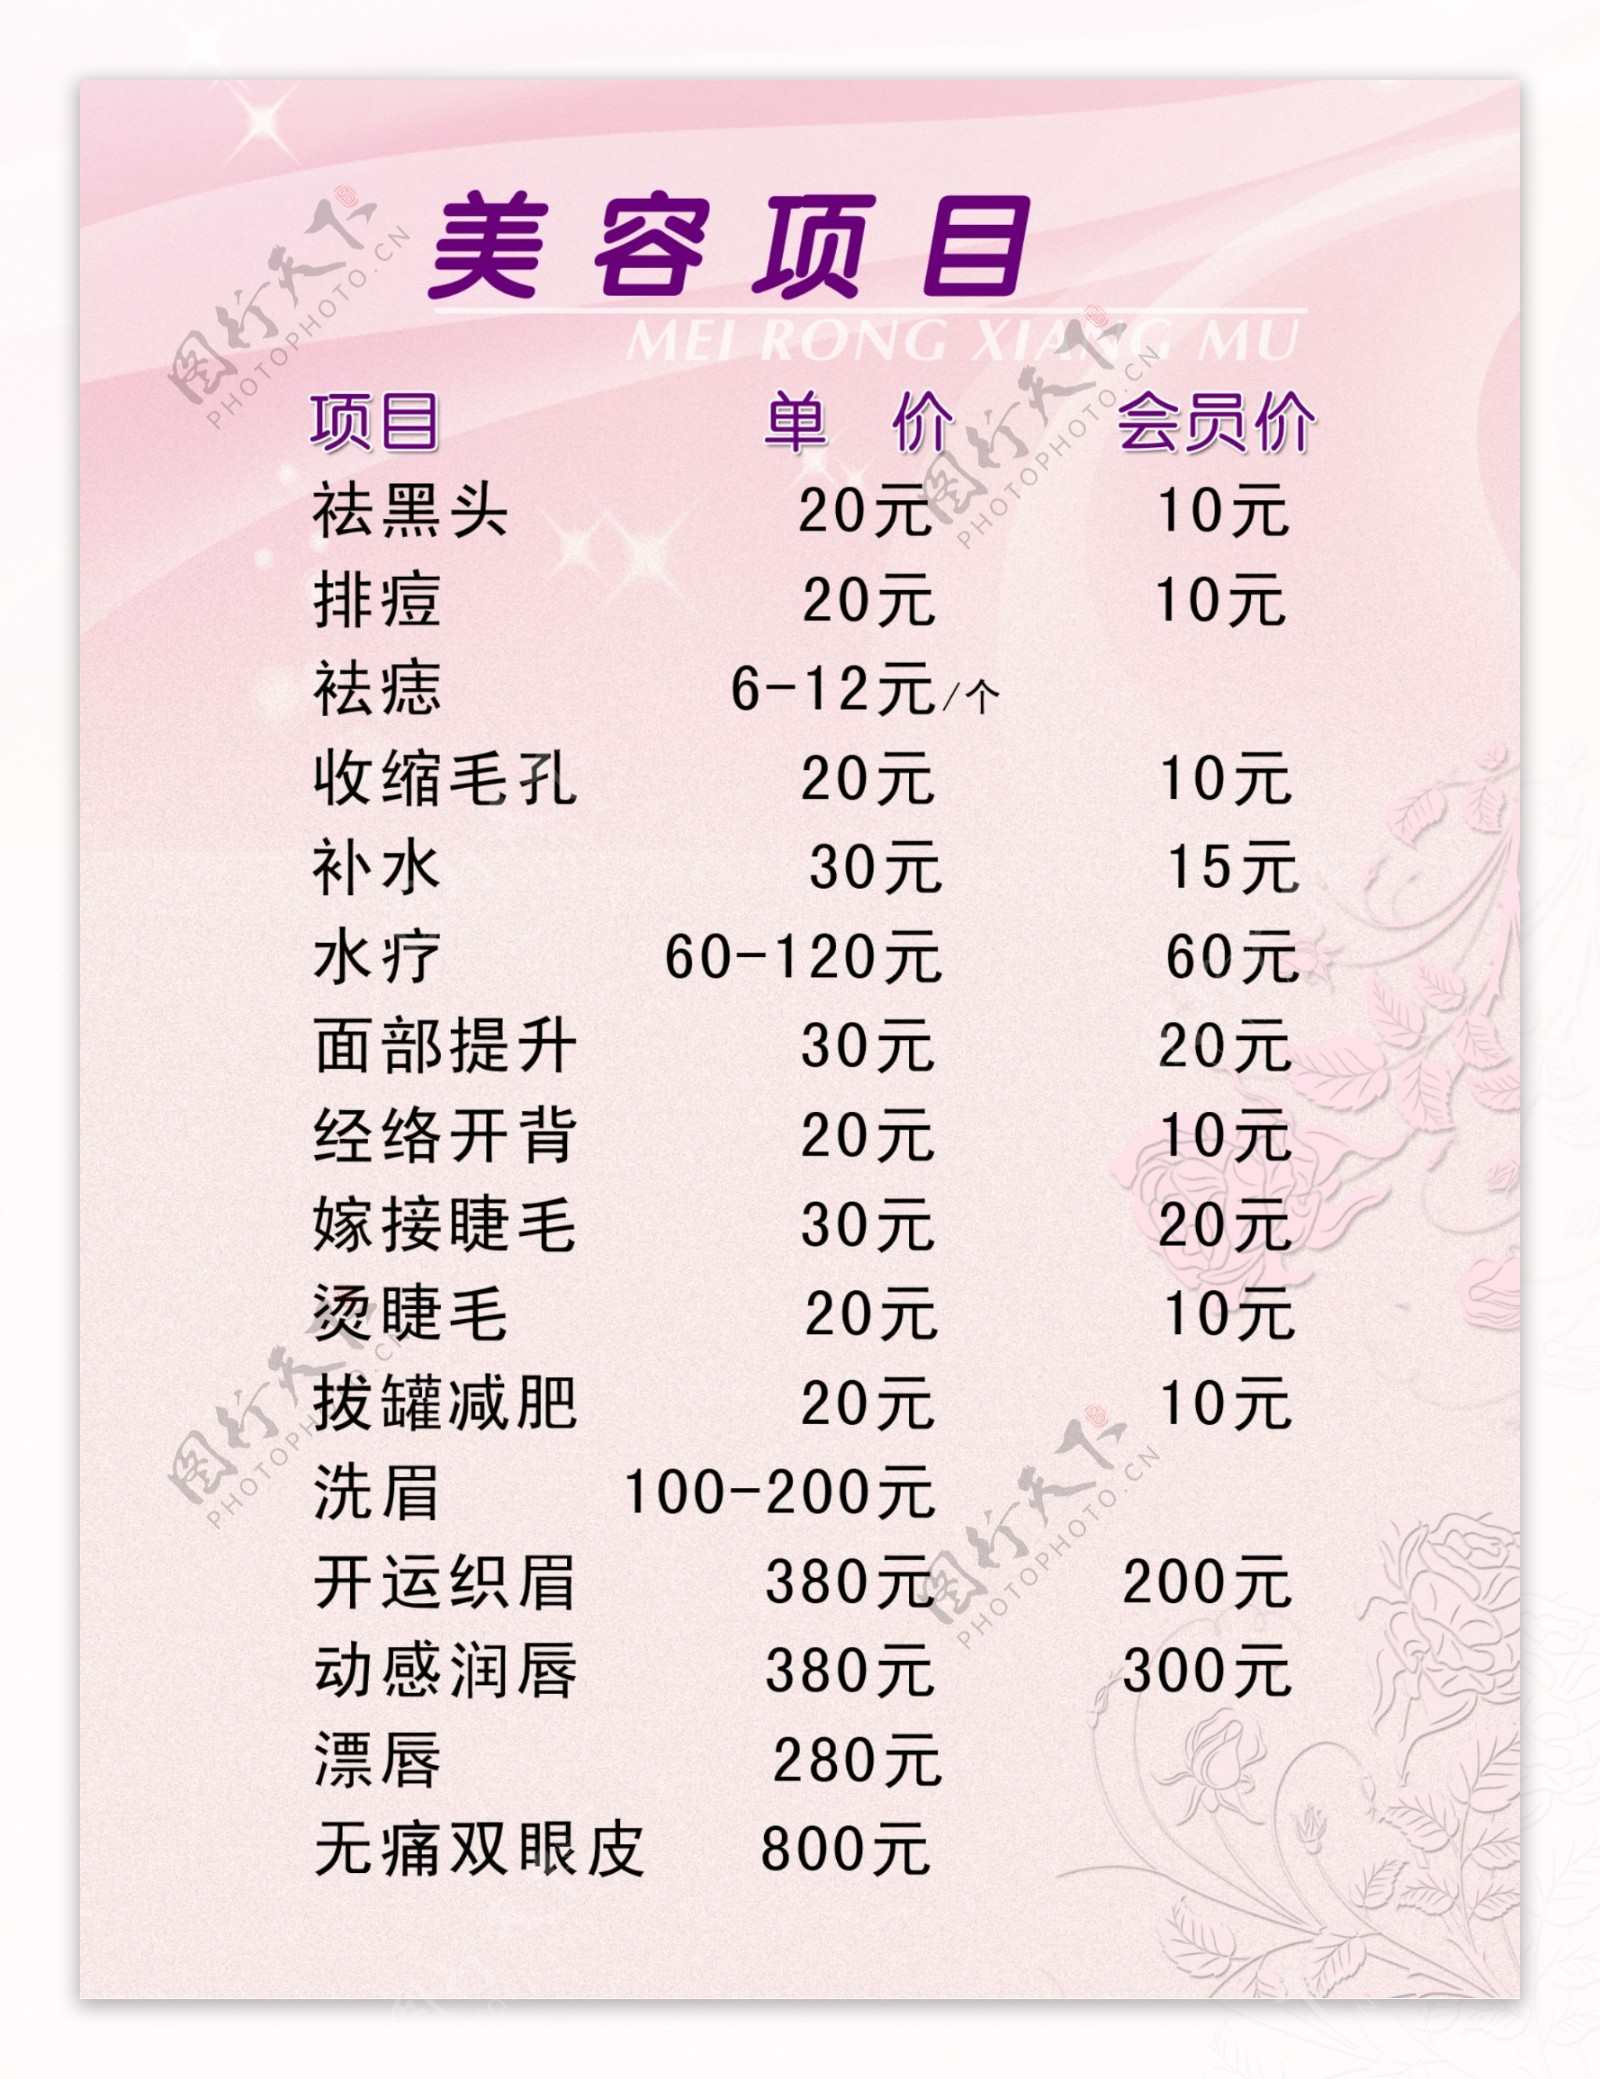 美容院价格表图片